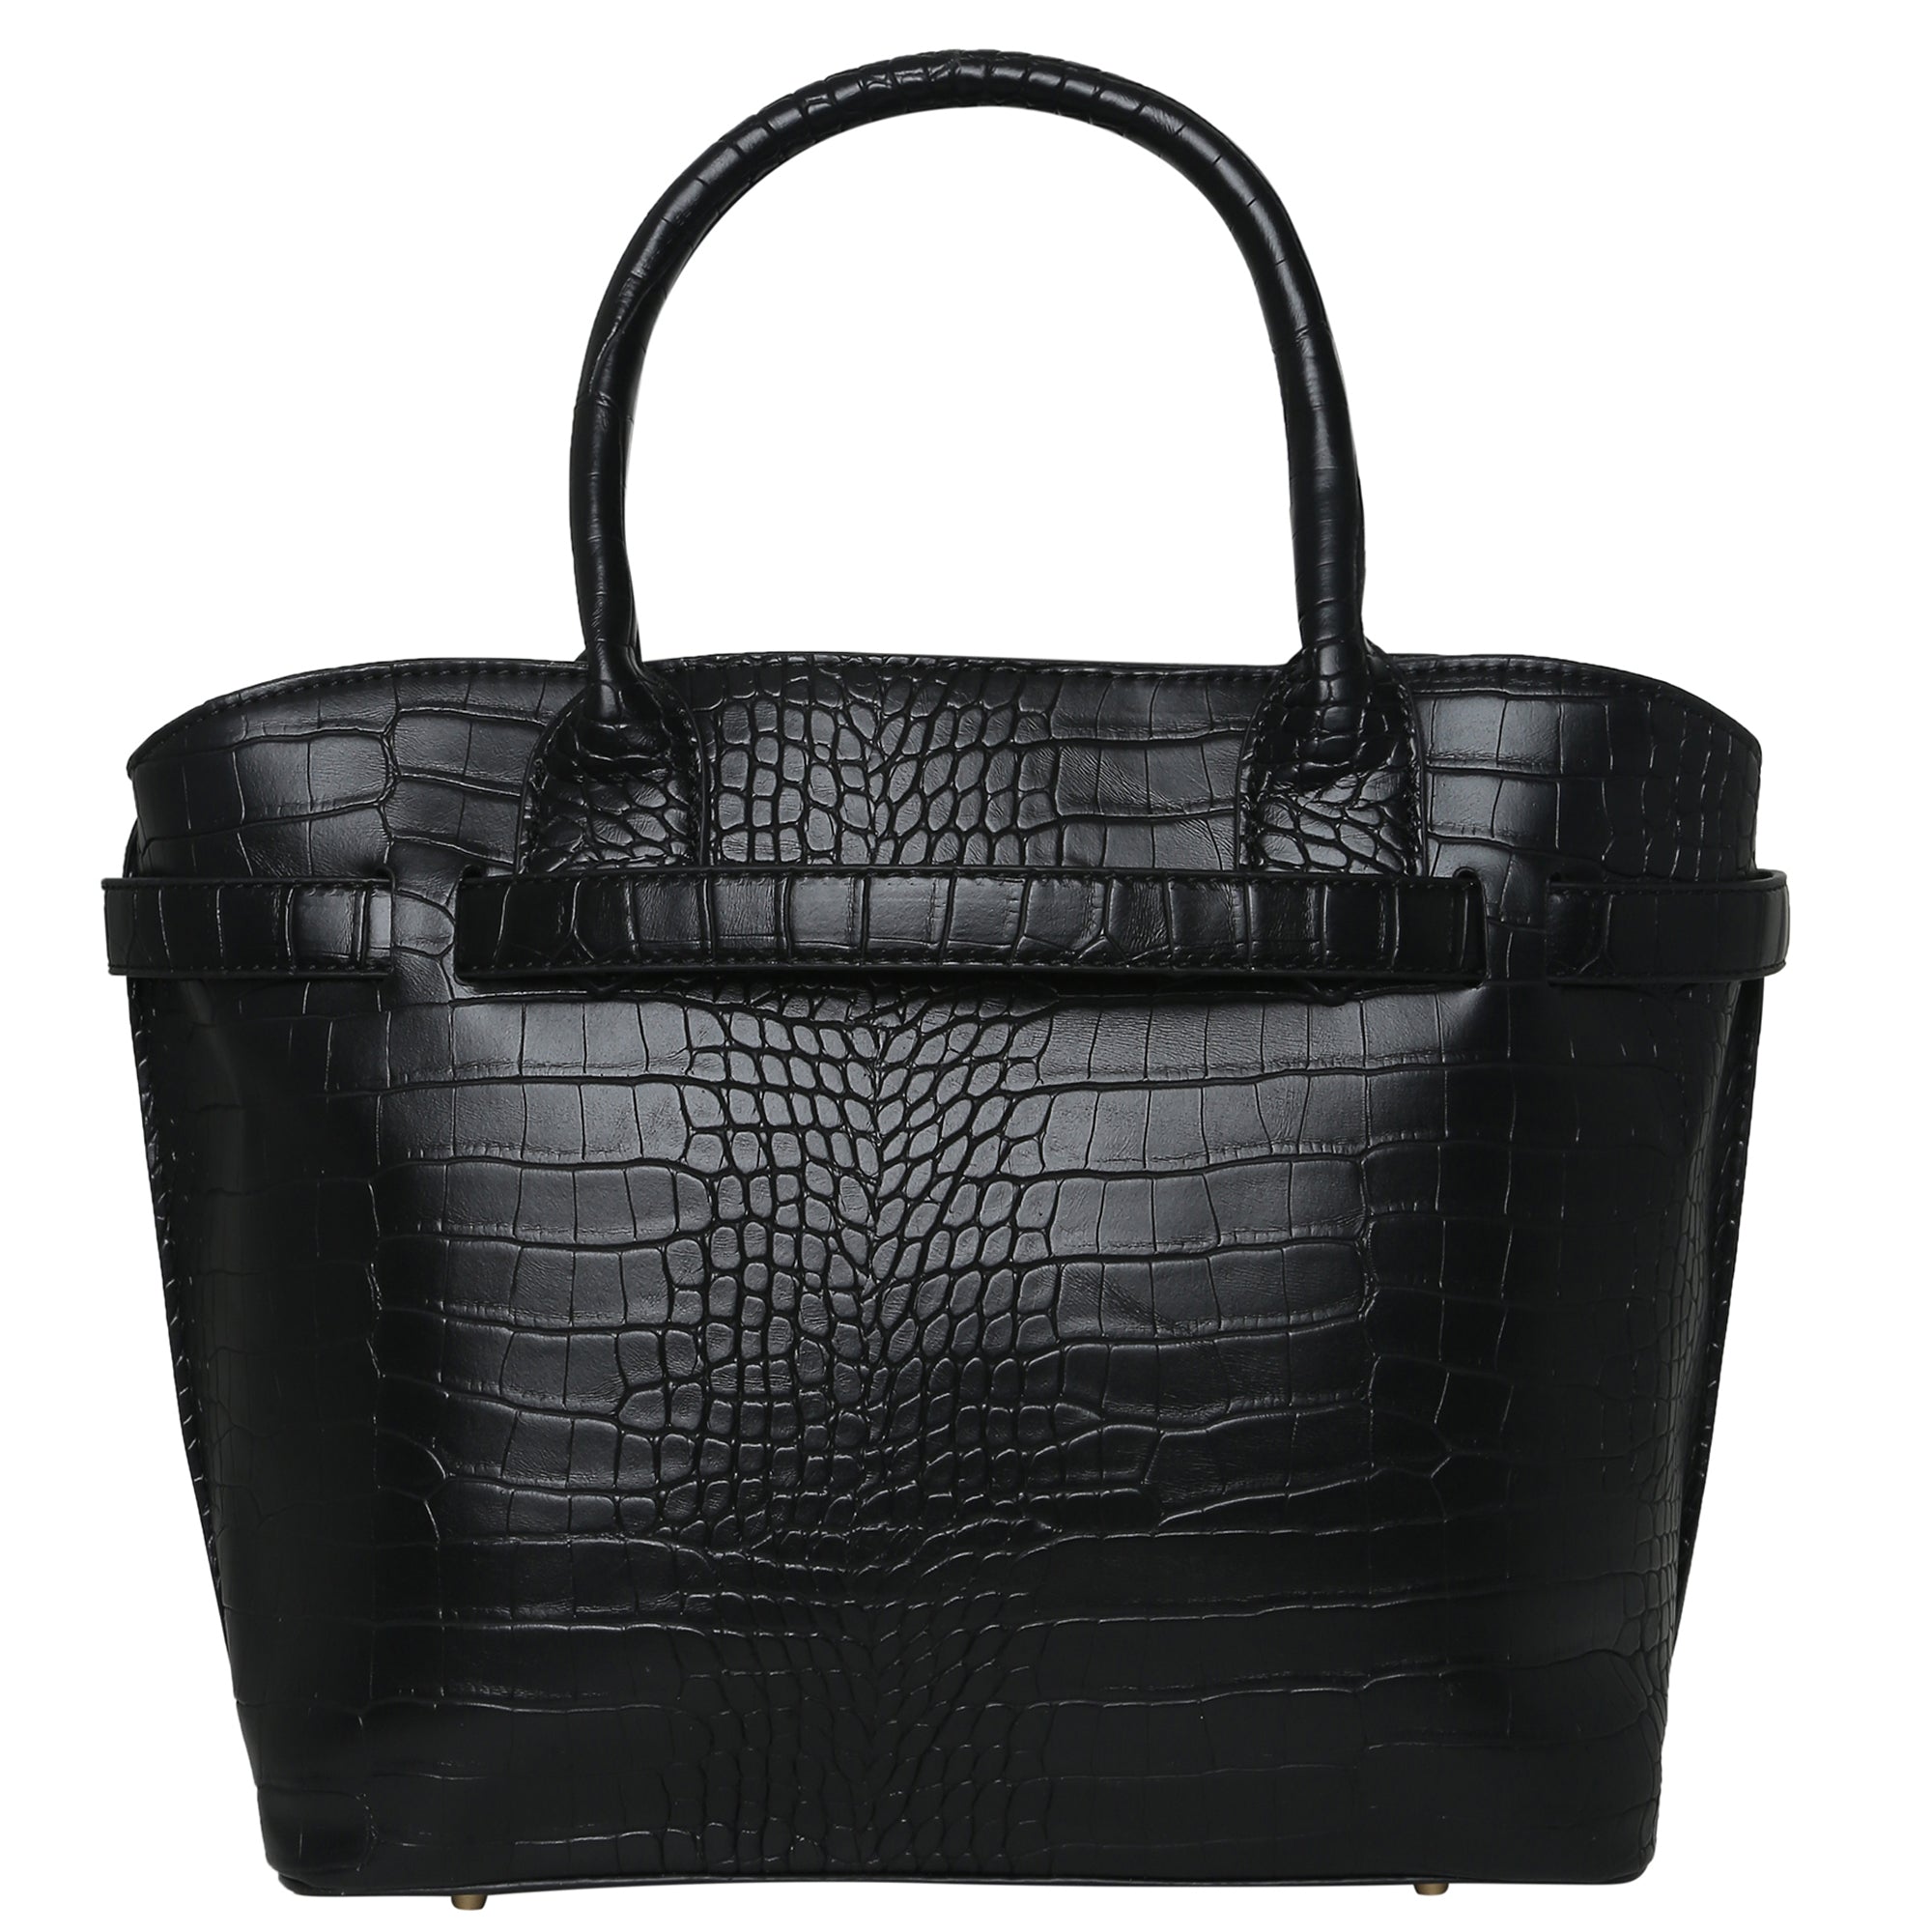 Accessorize London Women's Faux Leather Black Rosaline Handheld Bag